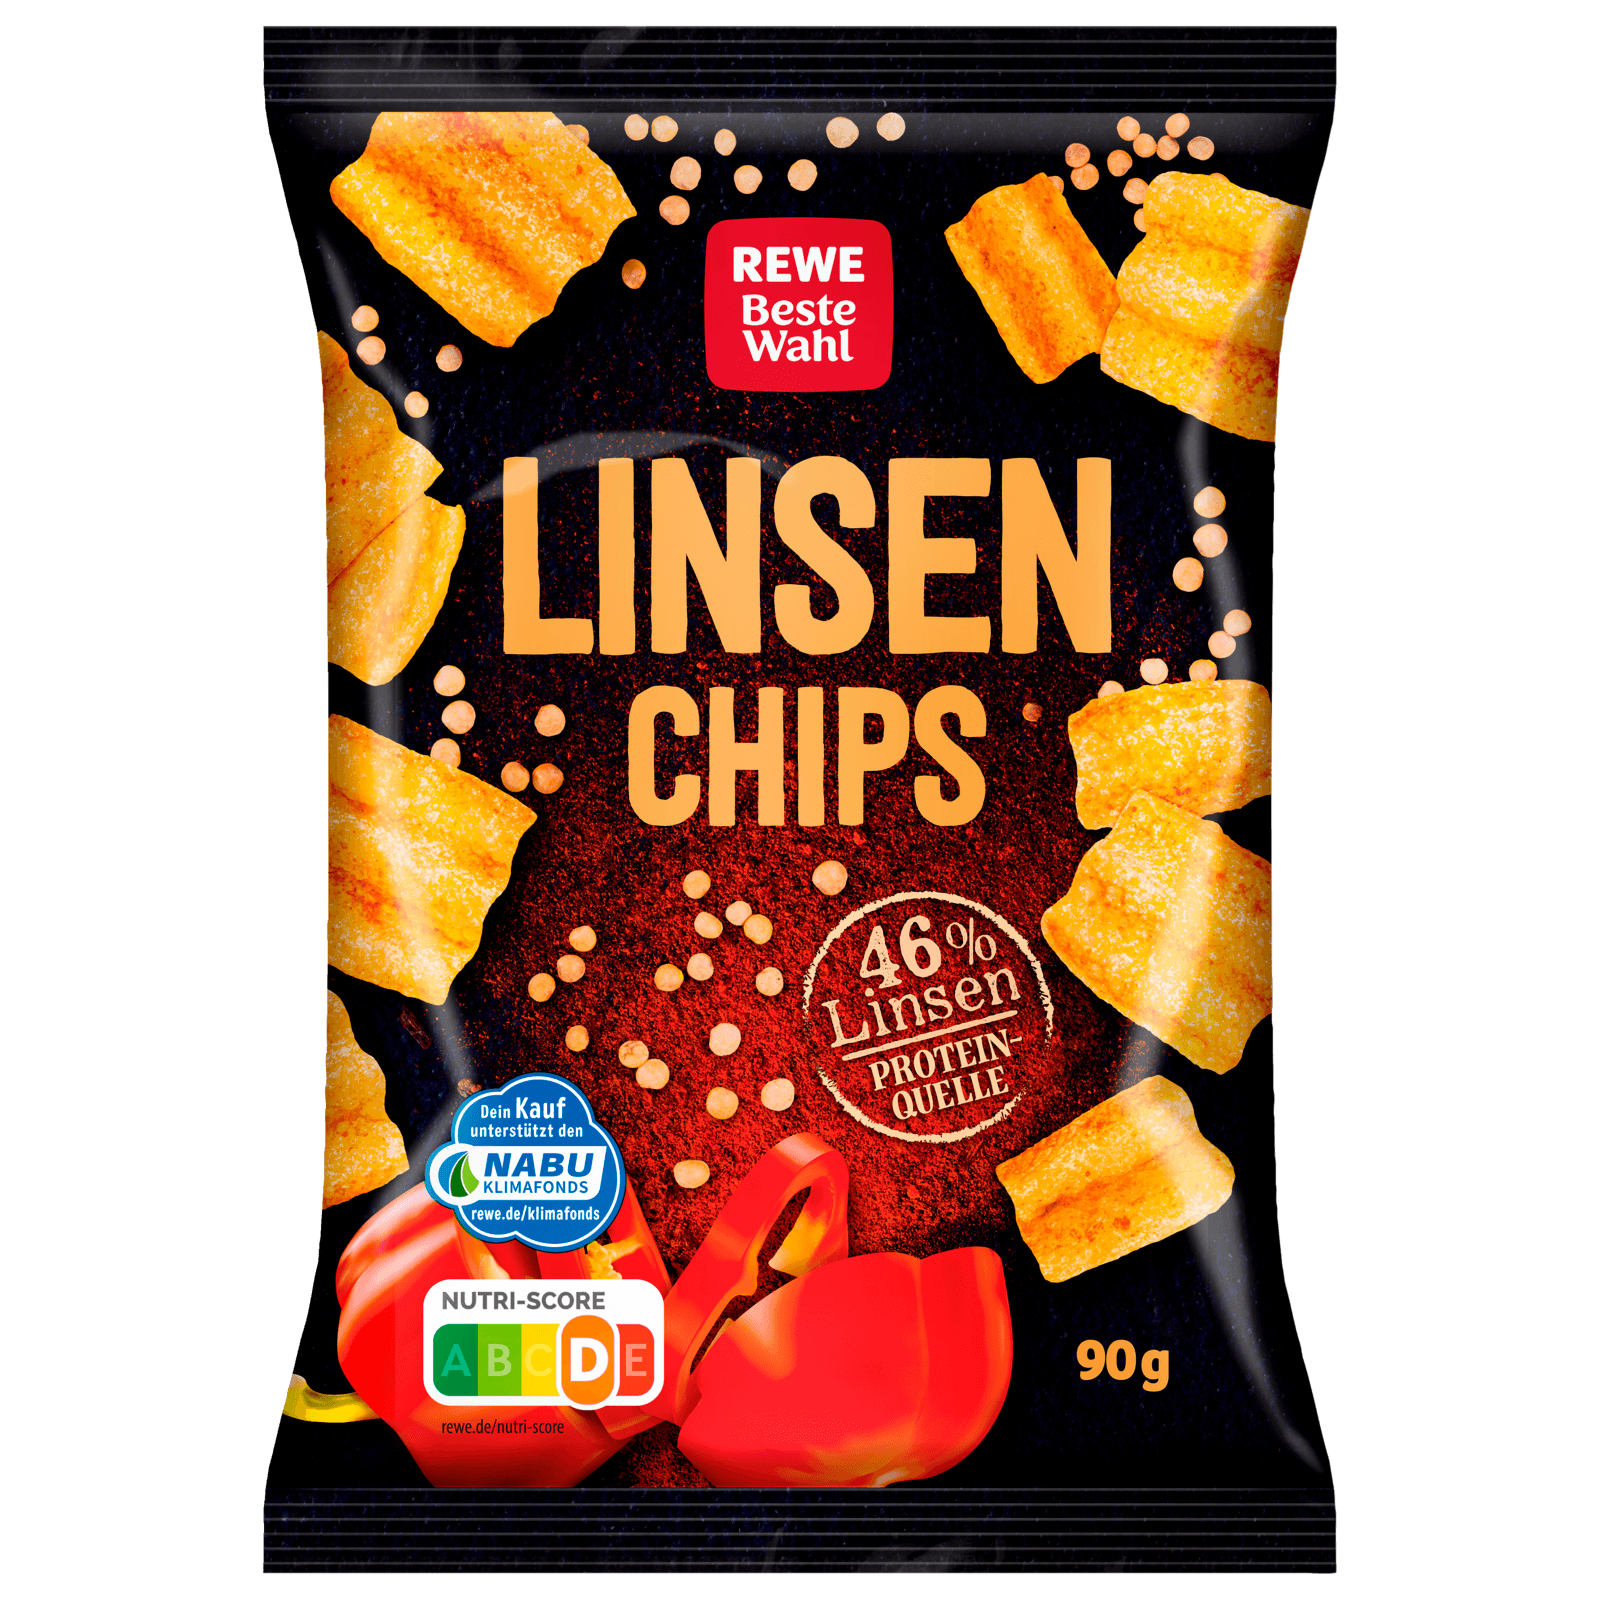 REWE Beste Wahl Linsen Chips 90g bei REWE online bestellen!